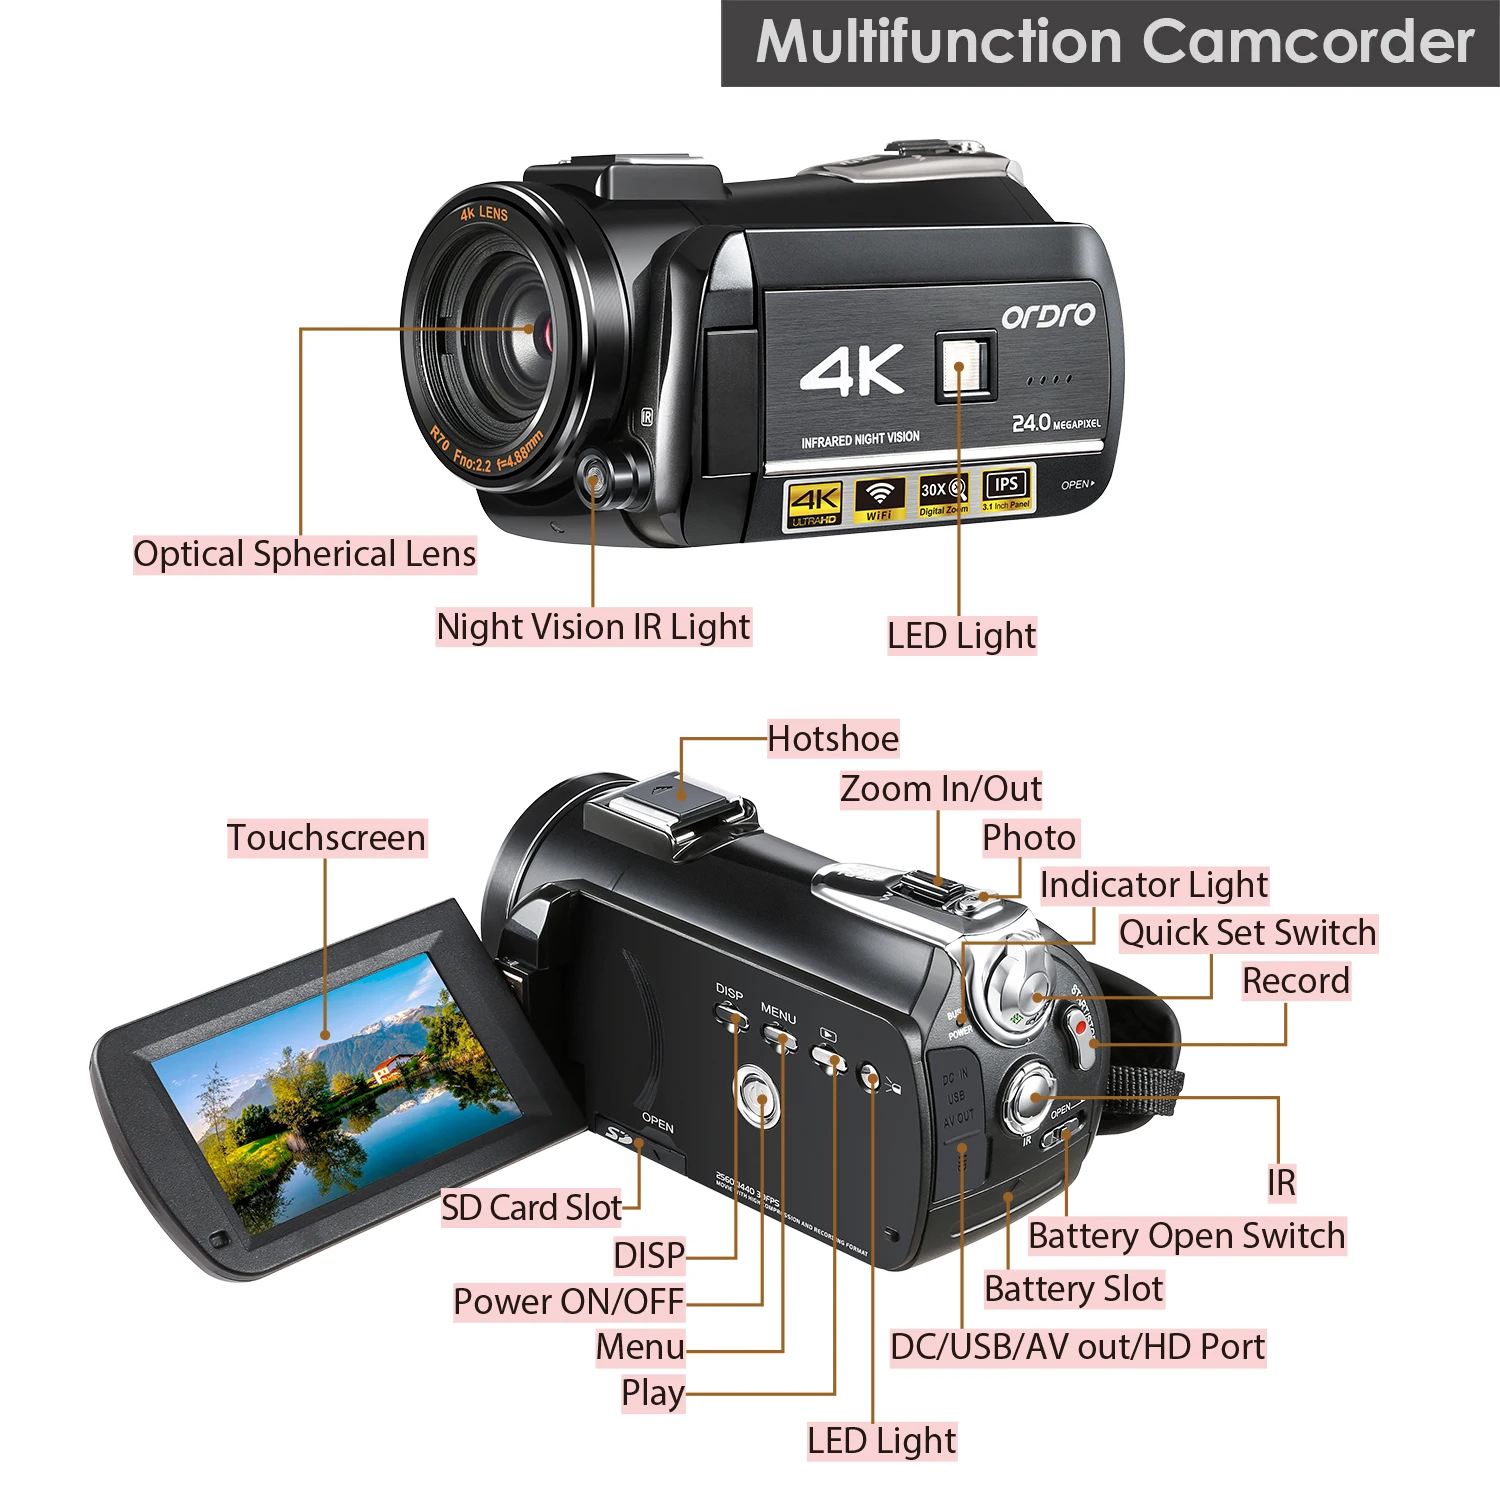 Ordro AC3 4K видеокамера WiFi видеокамера(1080P 60FPS, 30X цифровой зум, 3,1 дюймовый ips сенсорный экран, инфракрасное ночное видение)-черный